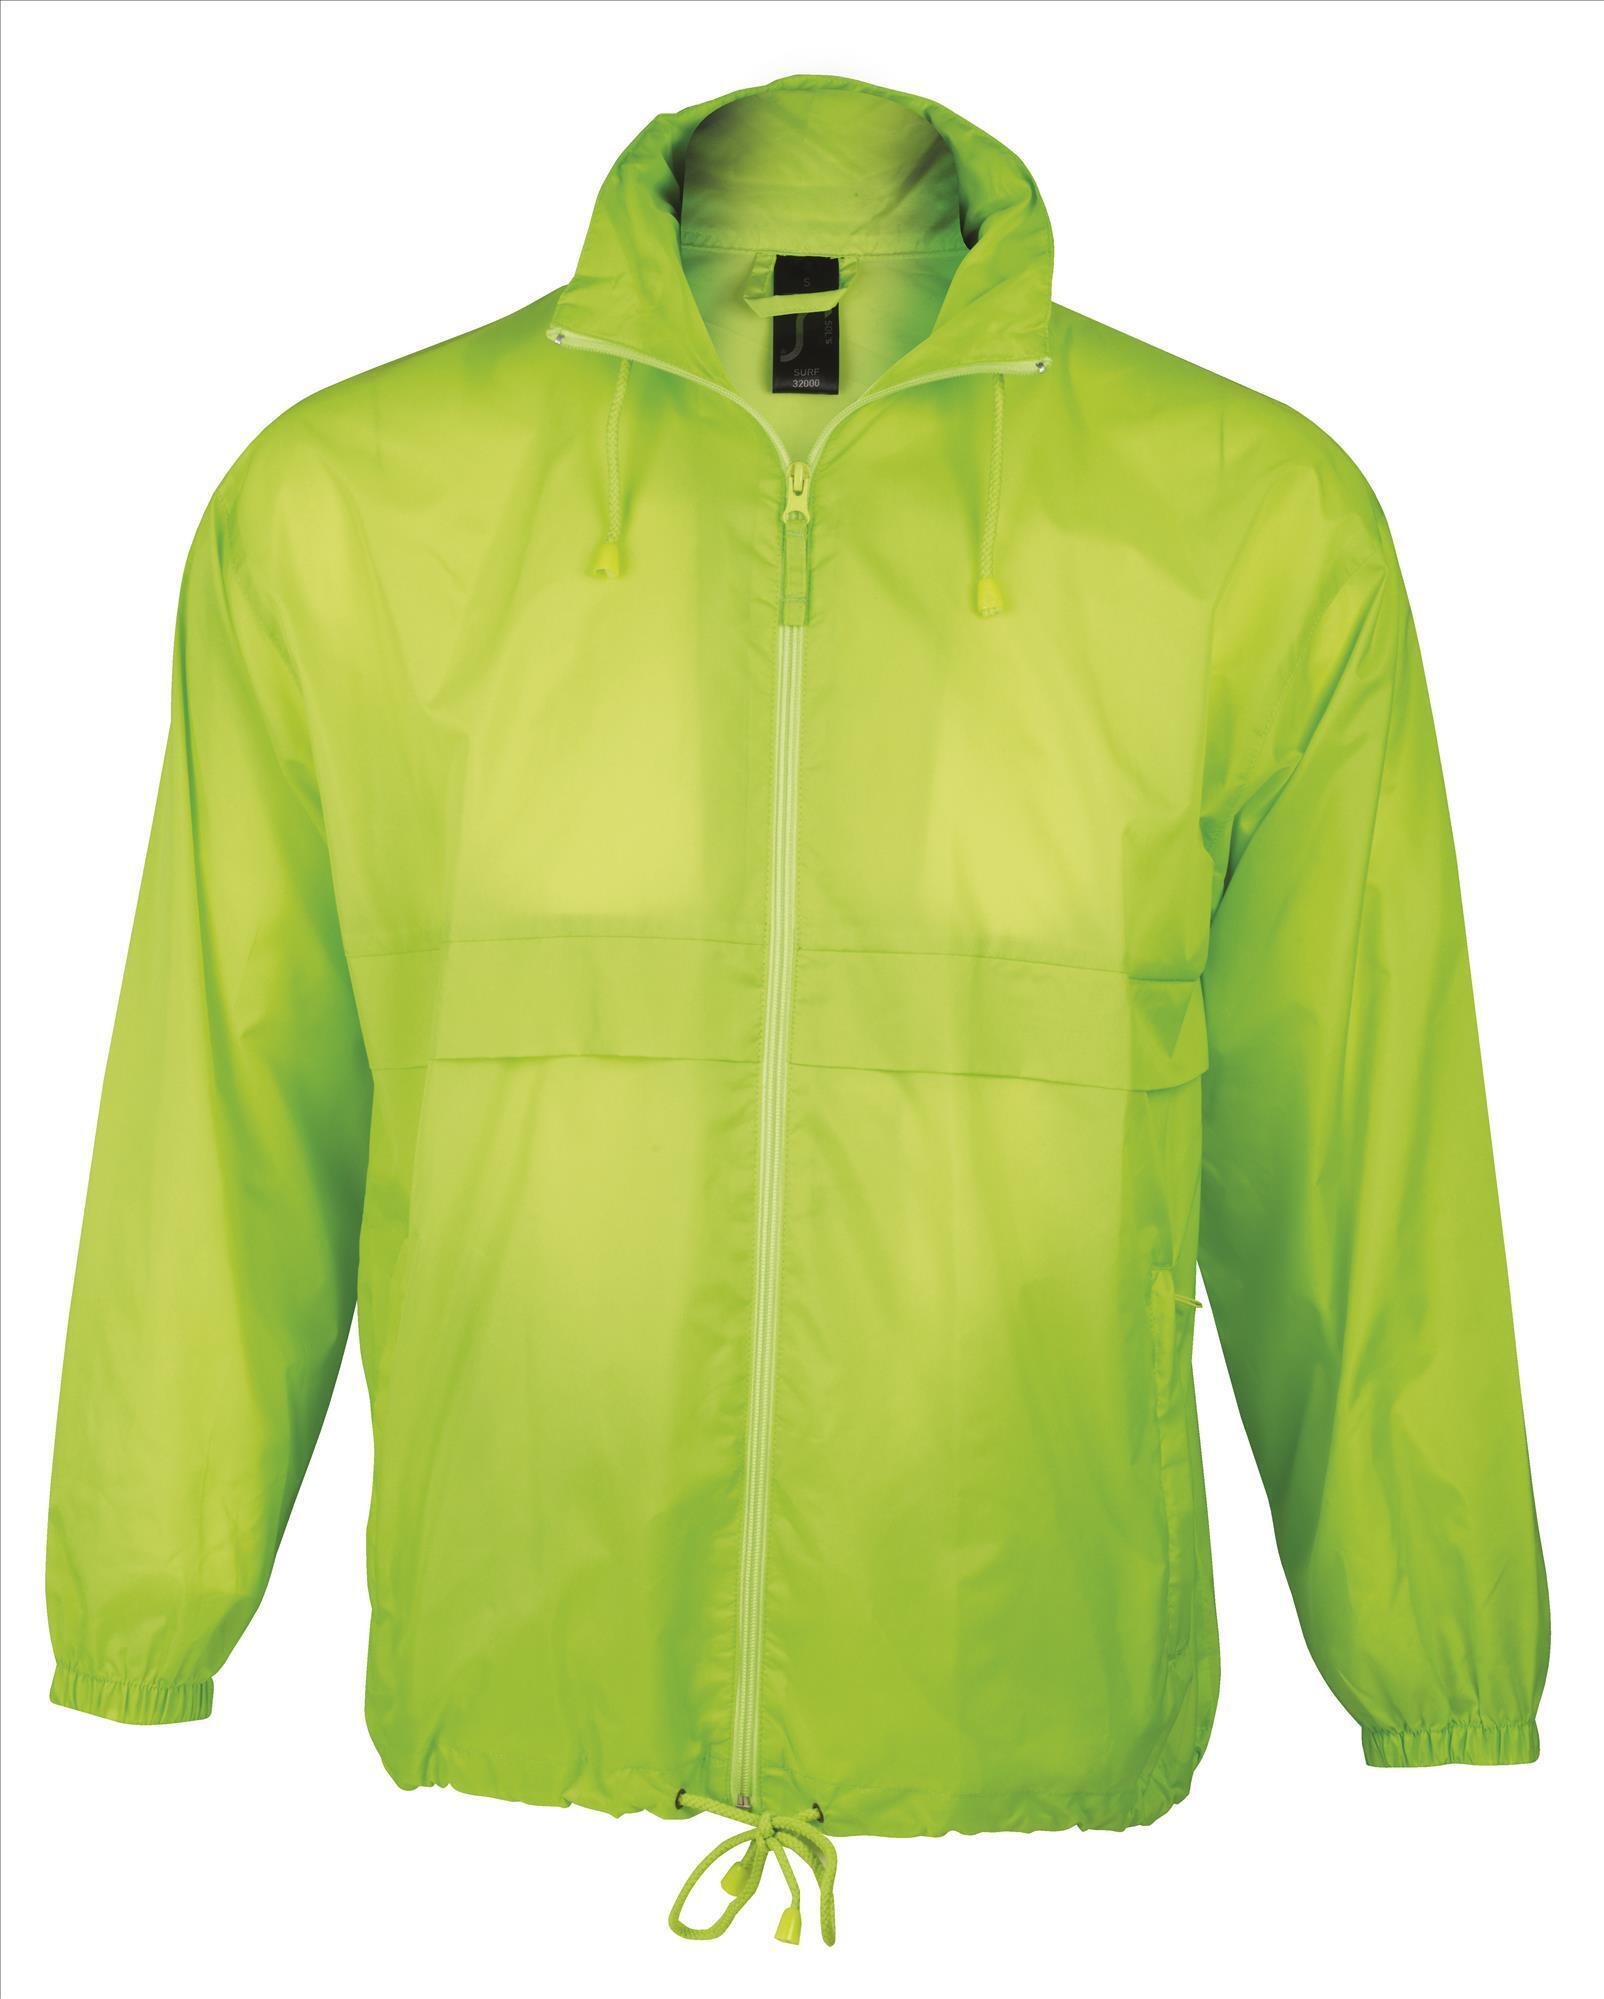 Unisex waterdichte windbreaker jas met een kap regenjas neon groen